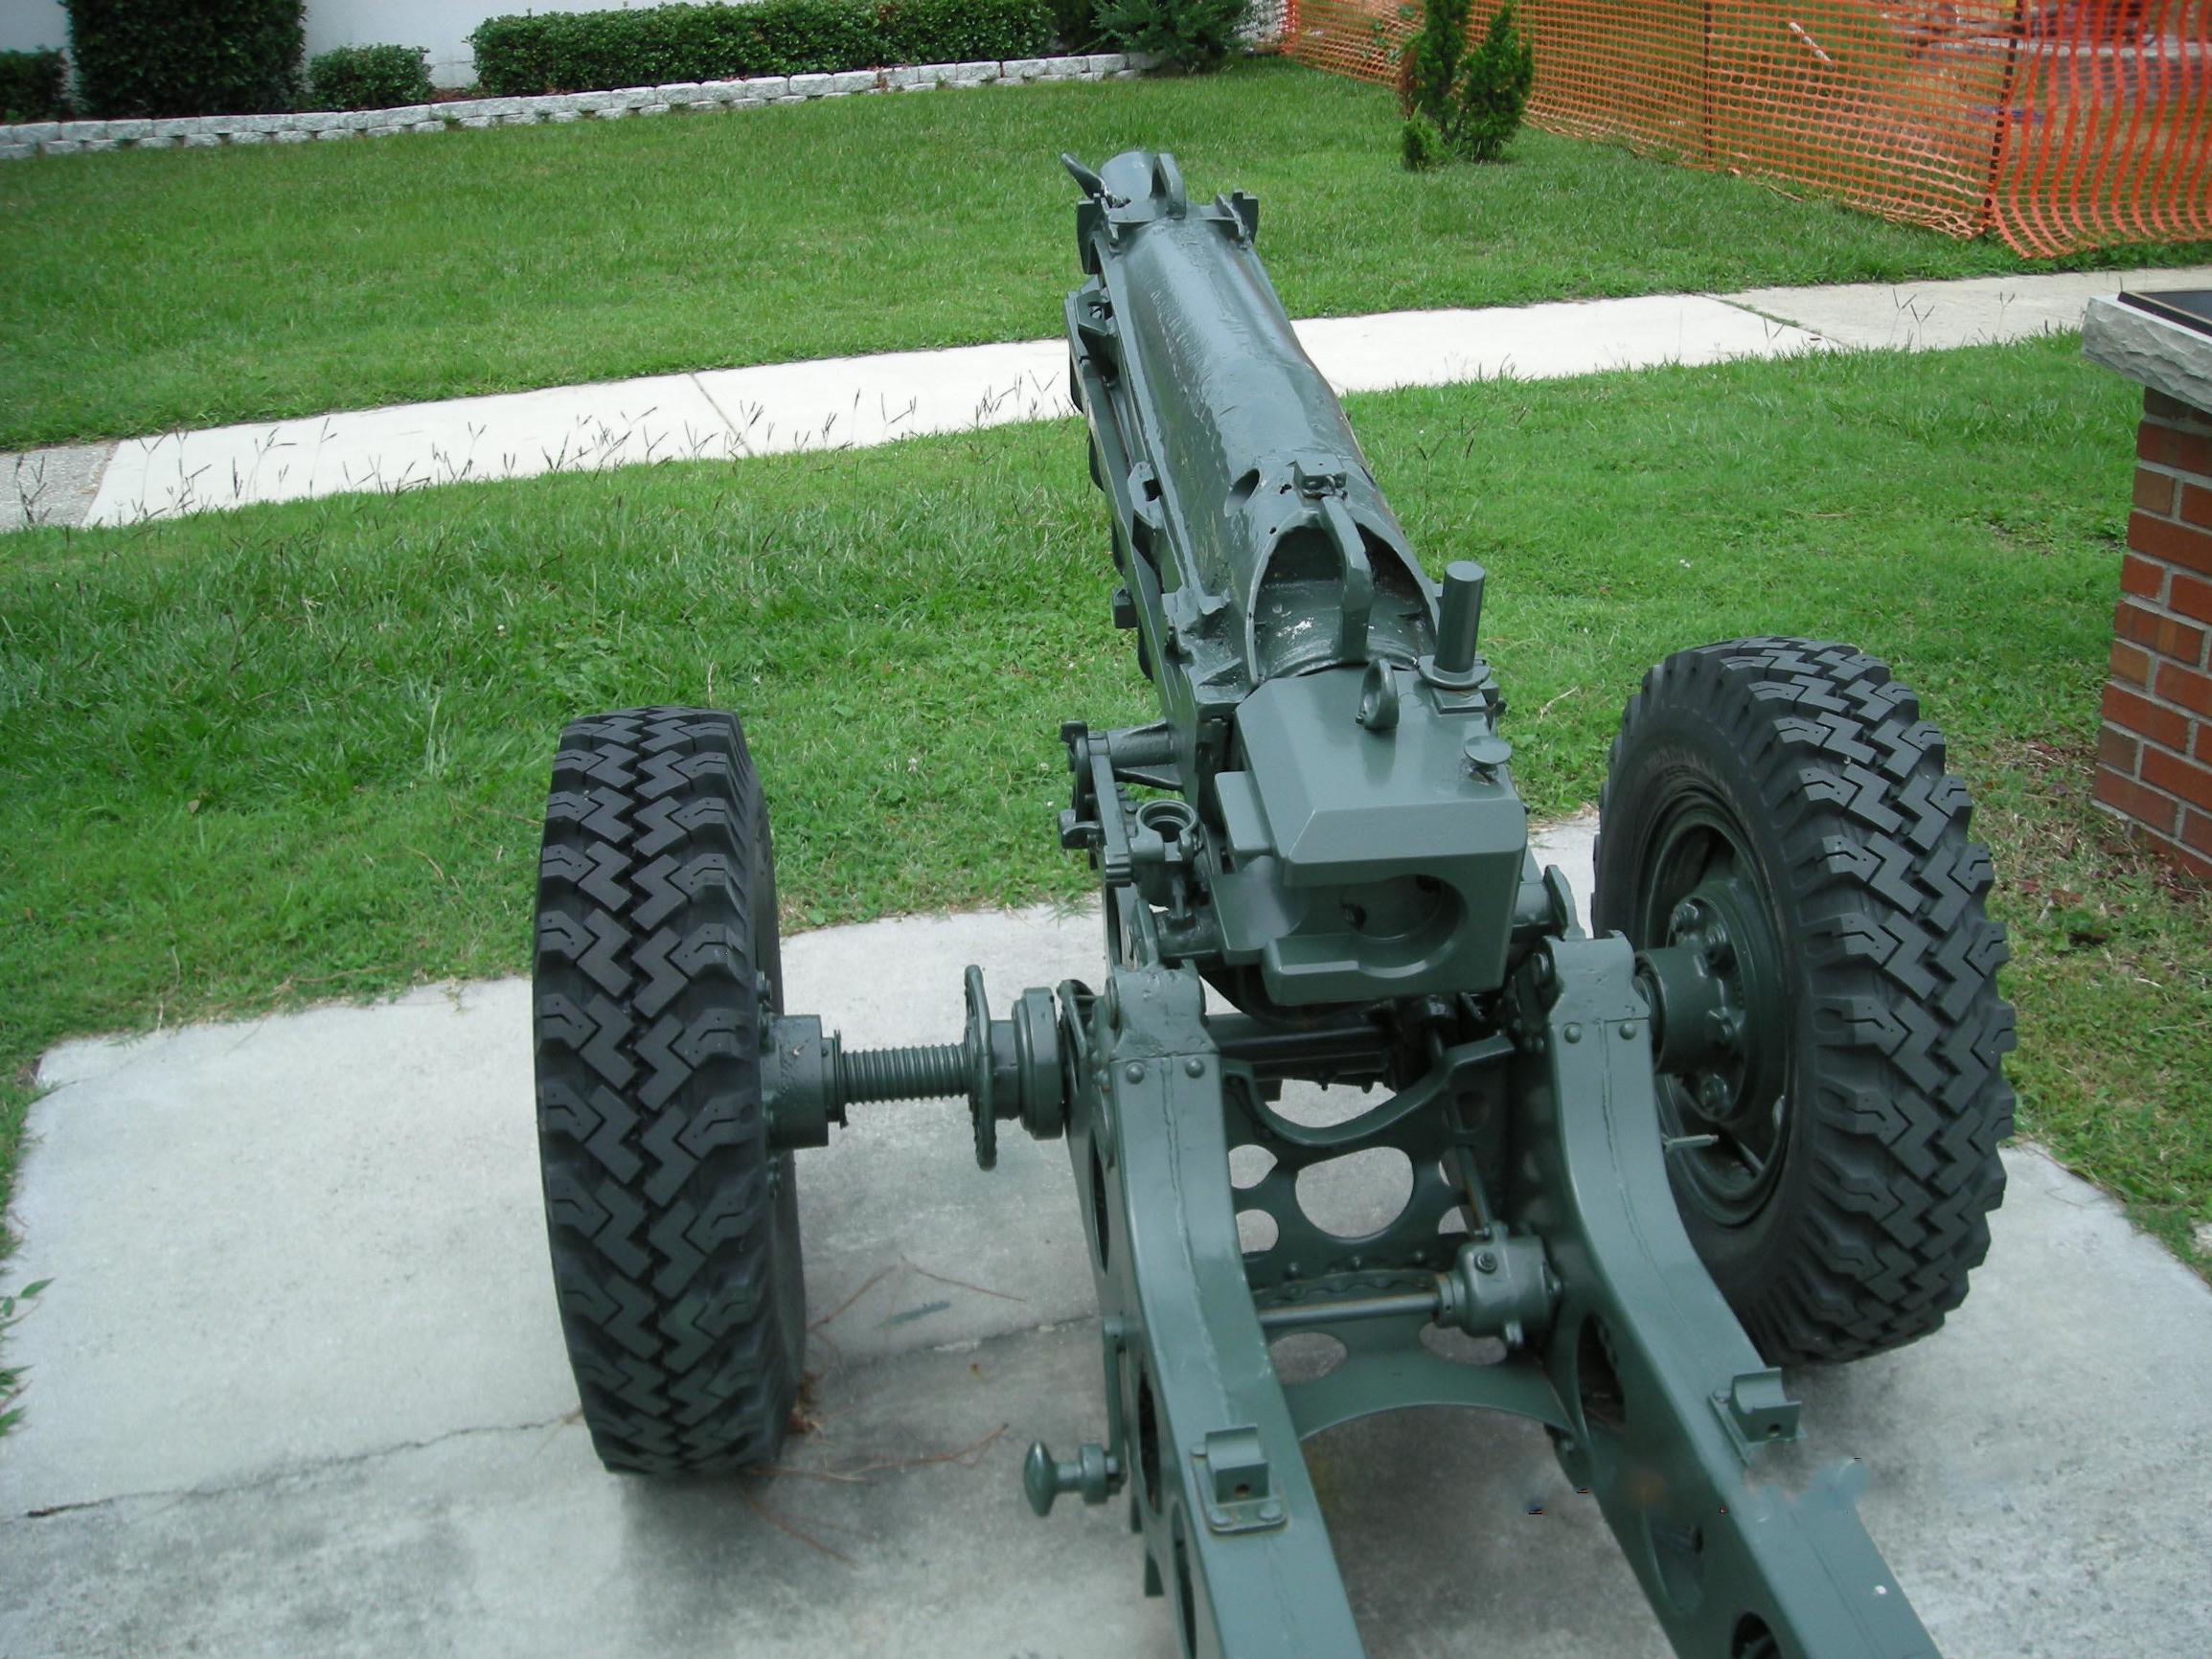 这款炮美国山炮比云龙兄的意大利炮还厉害几十倍